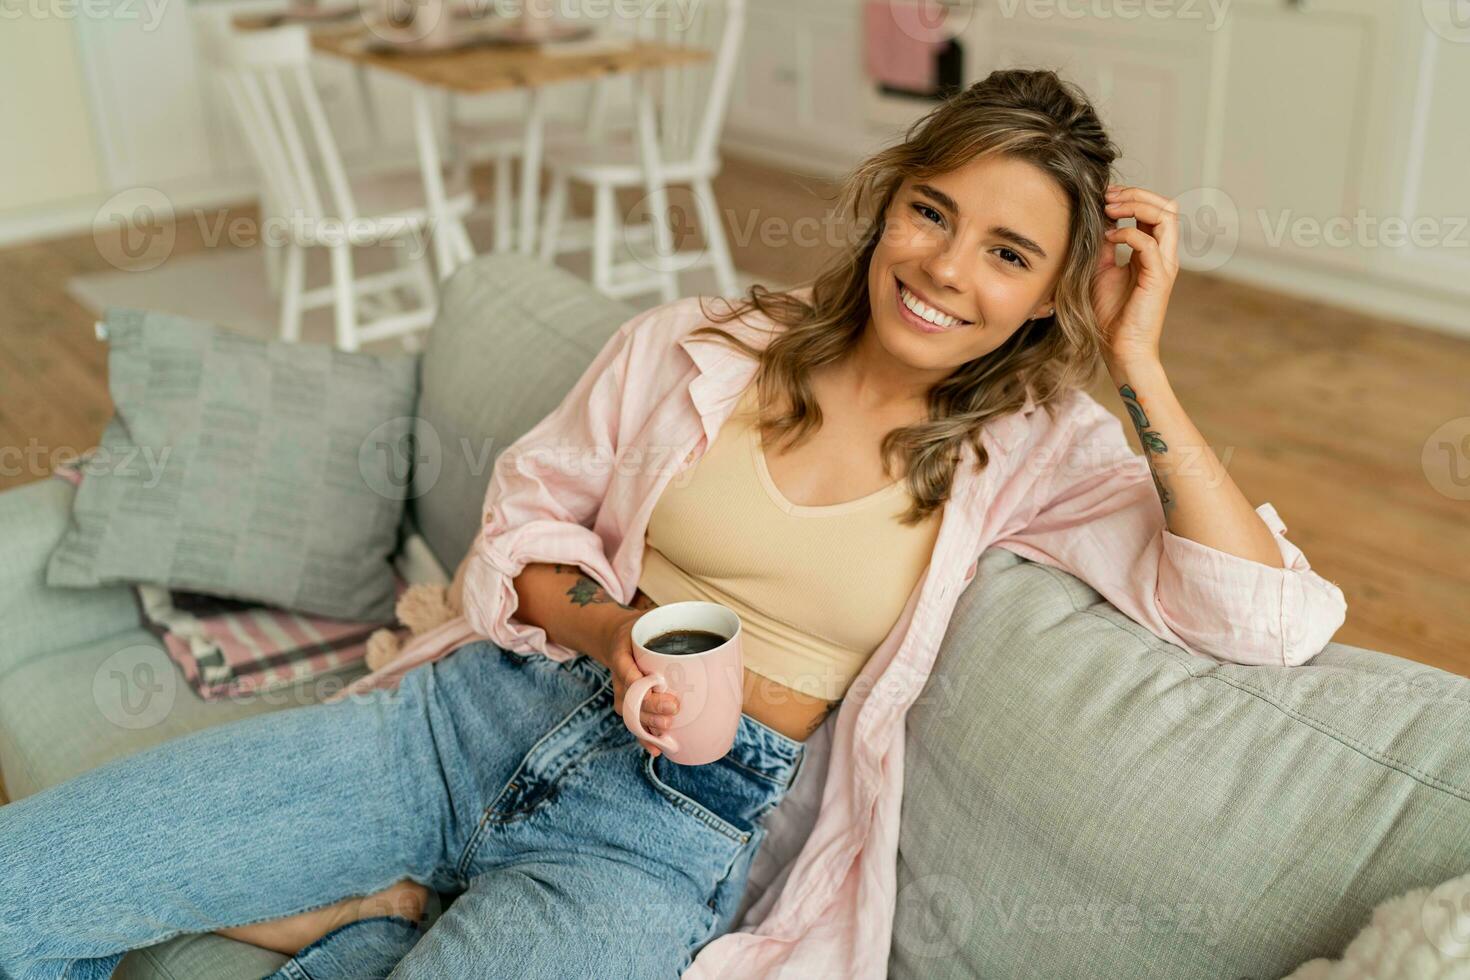 lief vrouw in gewoontjes kleren resting un sofa in knus leven kamer. Holding kop van cappuccino. foto